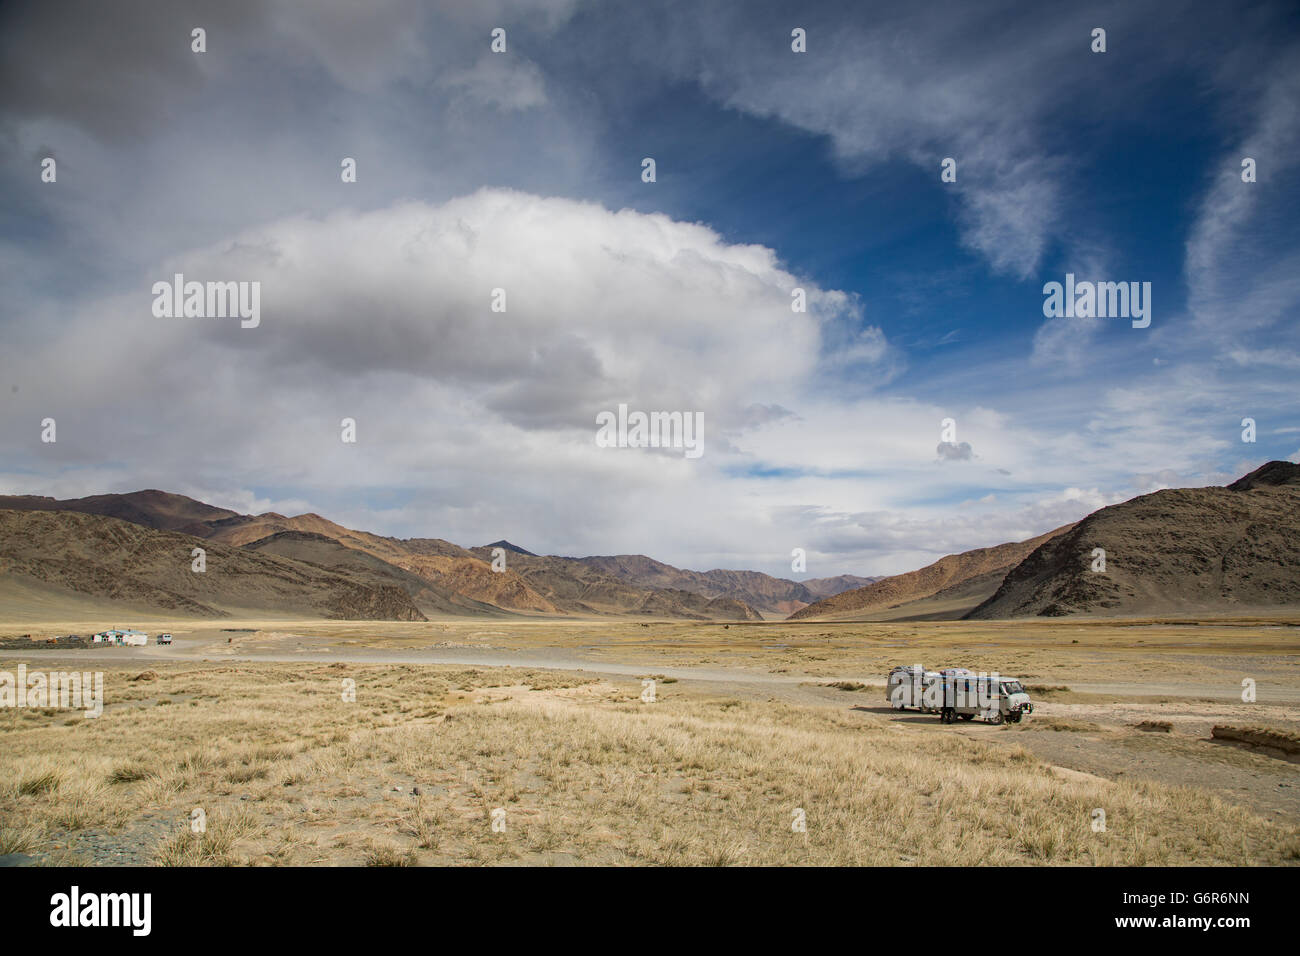 Deux voitures sur le côté d'une autoroute à l'ouest dans le paysage de l'ouest de la Mongolie Banque D'Images